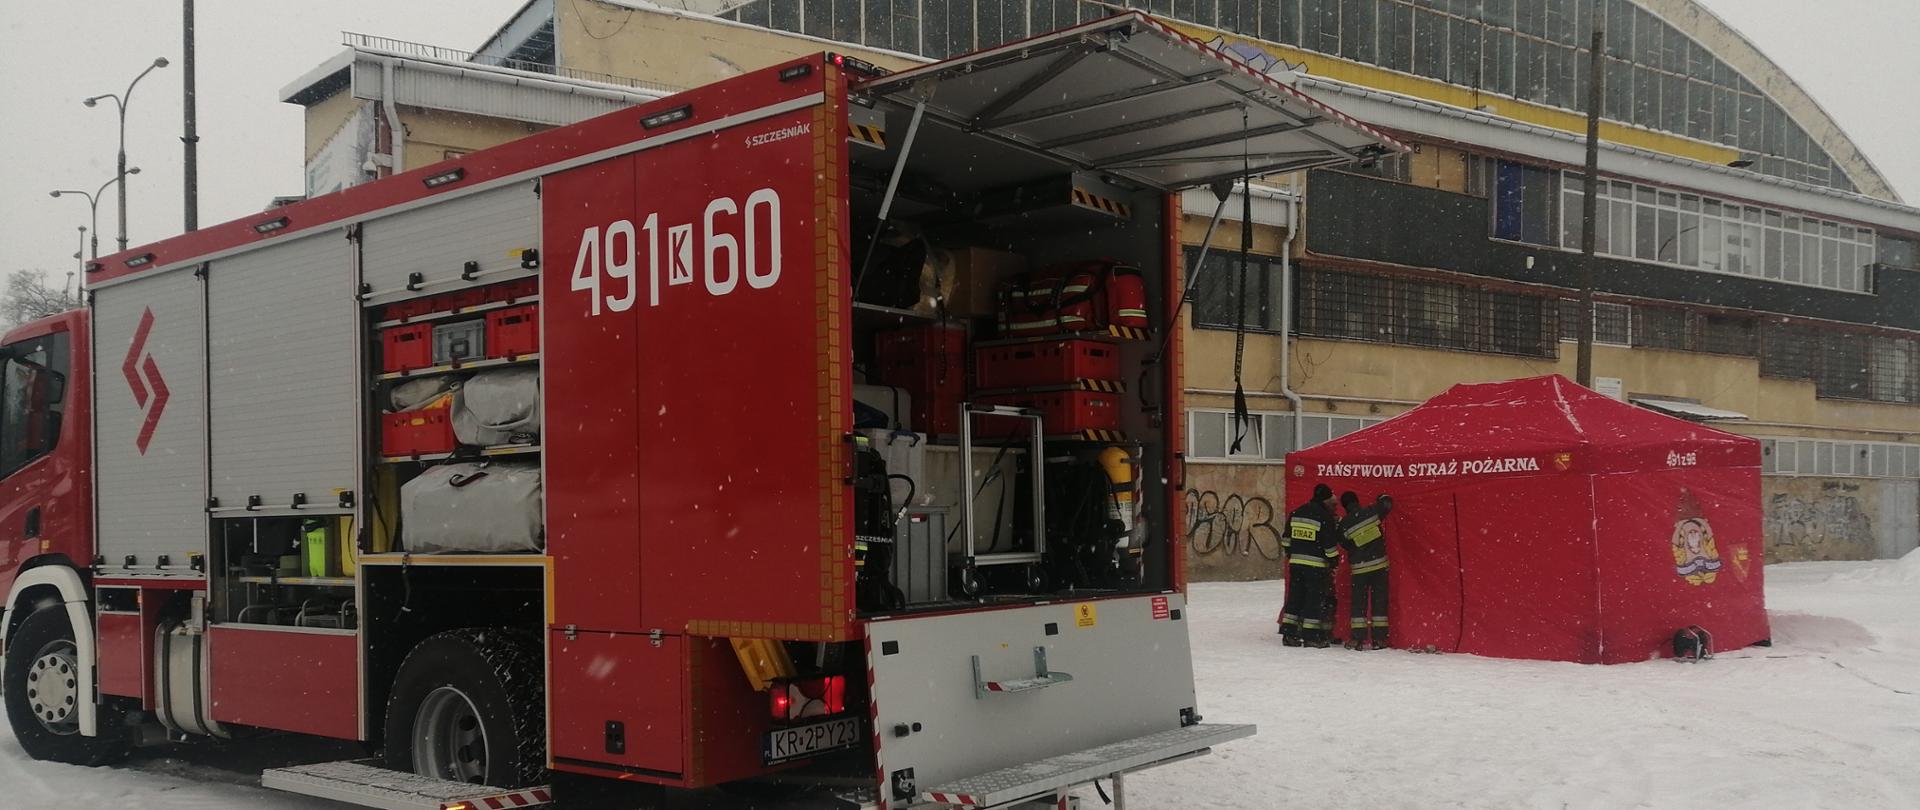 w tle Budynek Miejskiej Hali Lodowej, samochód średni ratownictwa chemicznego z JRG Nowy Targ, czerwony namiot do zabezpieczenia logistycznego działań, zdjęcie wykonane w warunkach zimowych, śnieg.